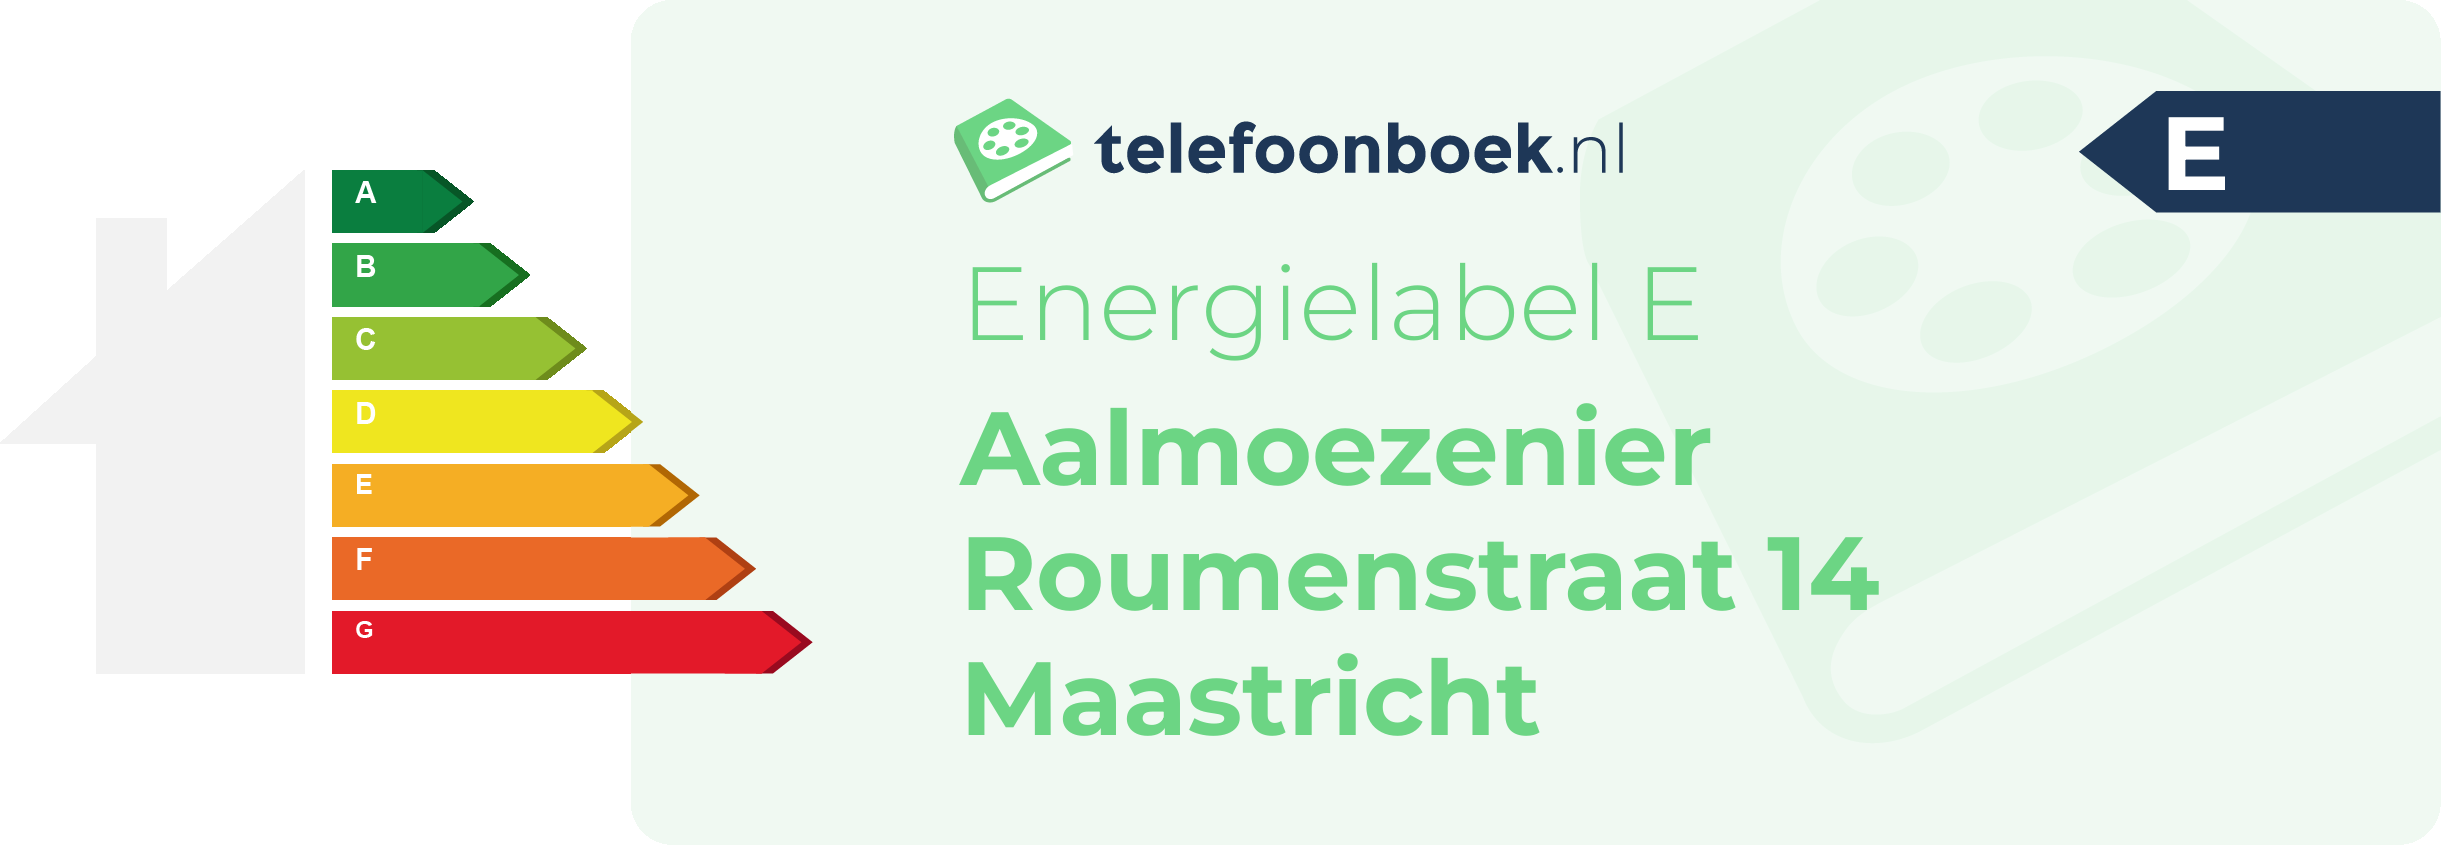 Energielabel Aalmoezenier Roumenstraat 14 Maastricht